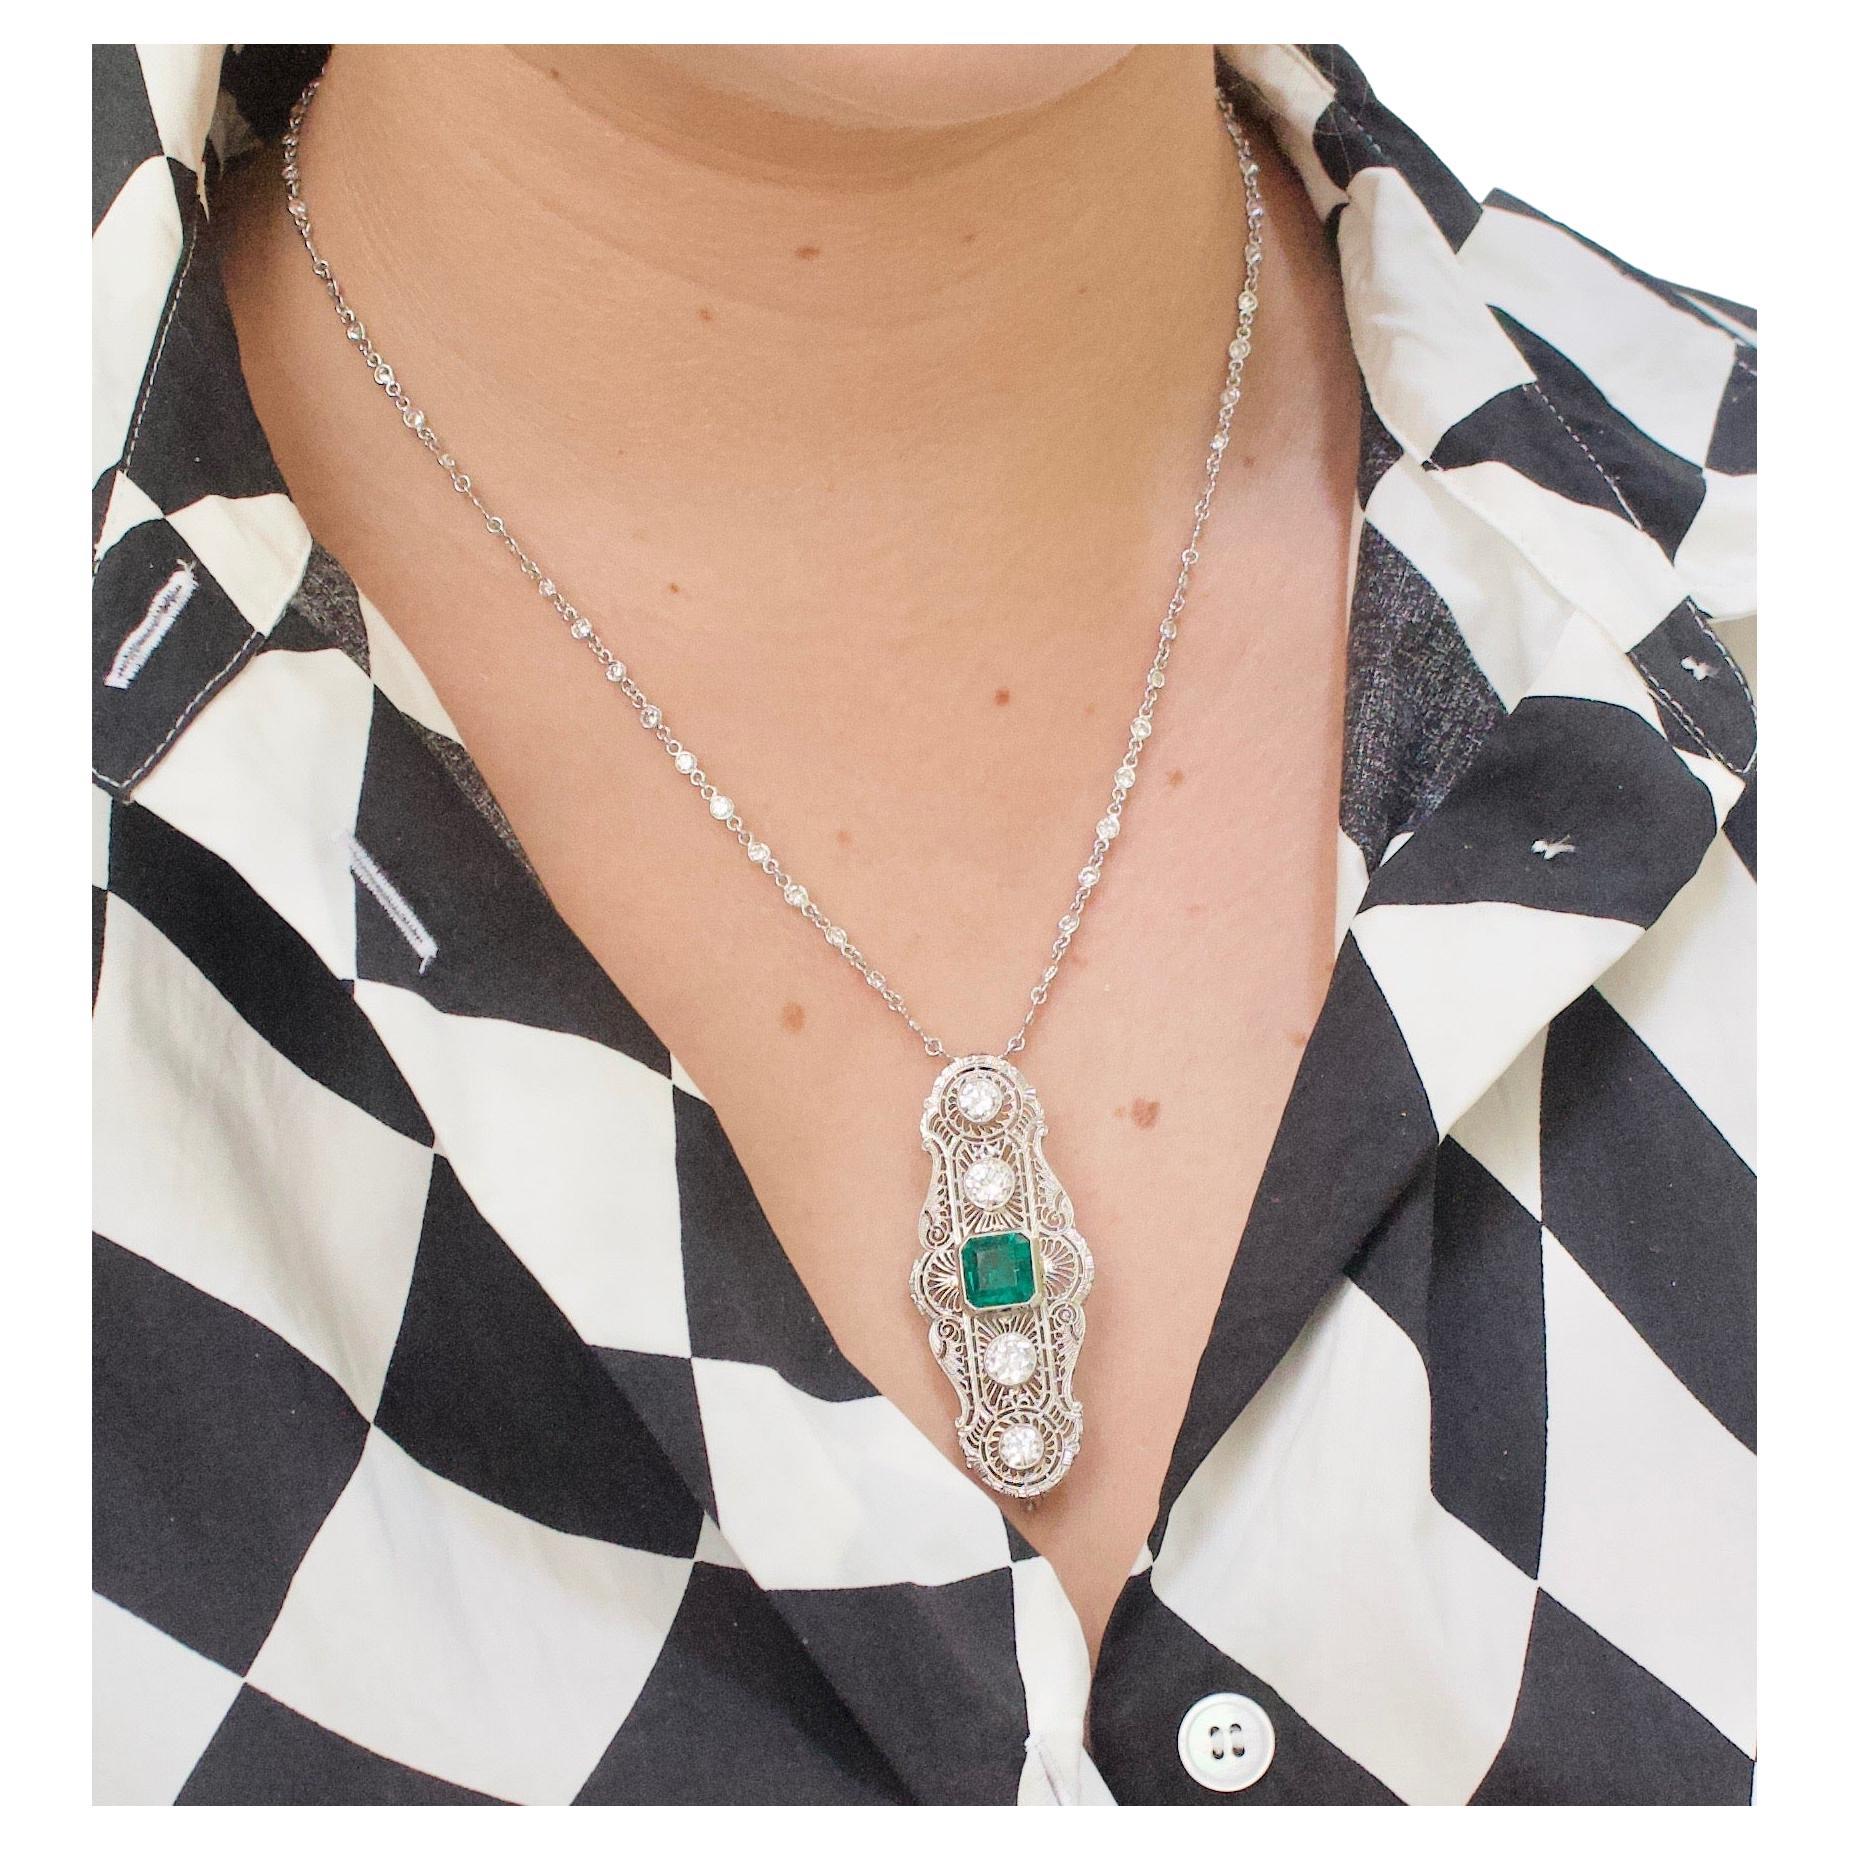 Kolumbianischer Smaragd und Diamant Halskette / Brosche ca. 1920er Jahre GIA zertifiziert